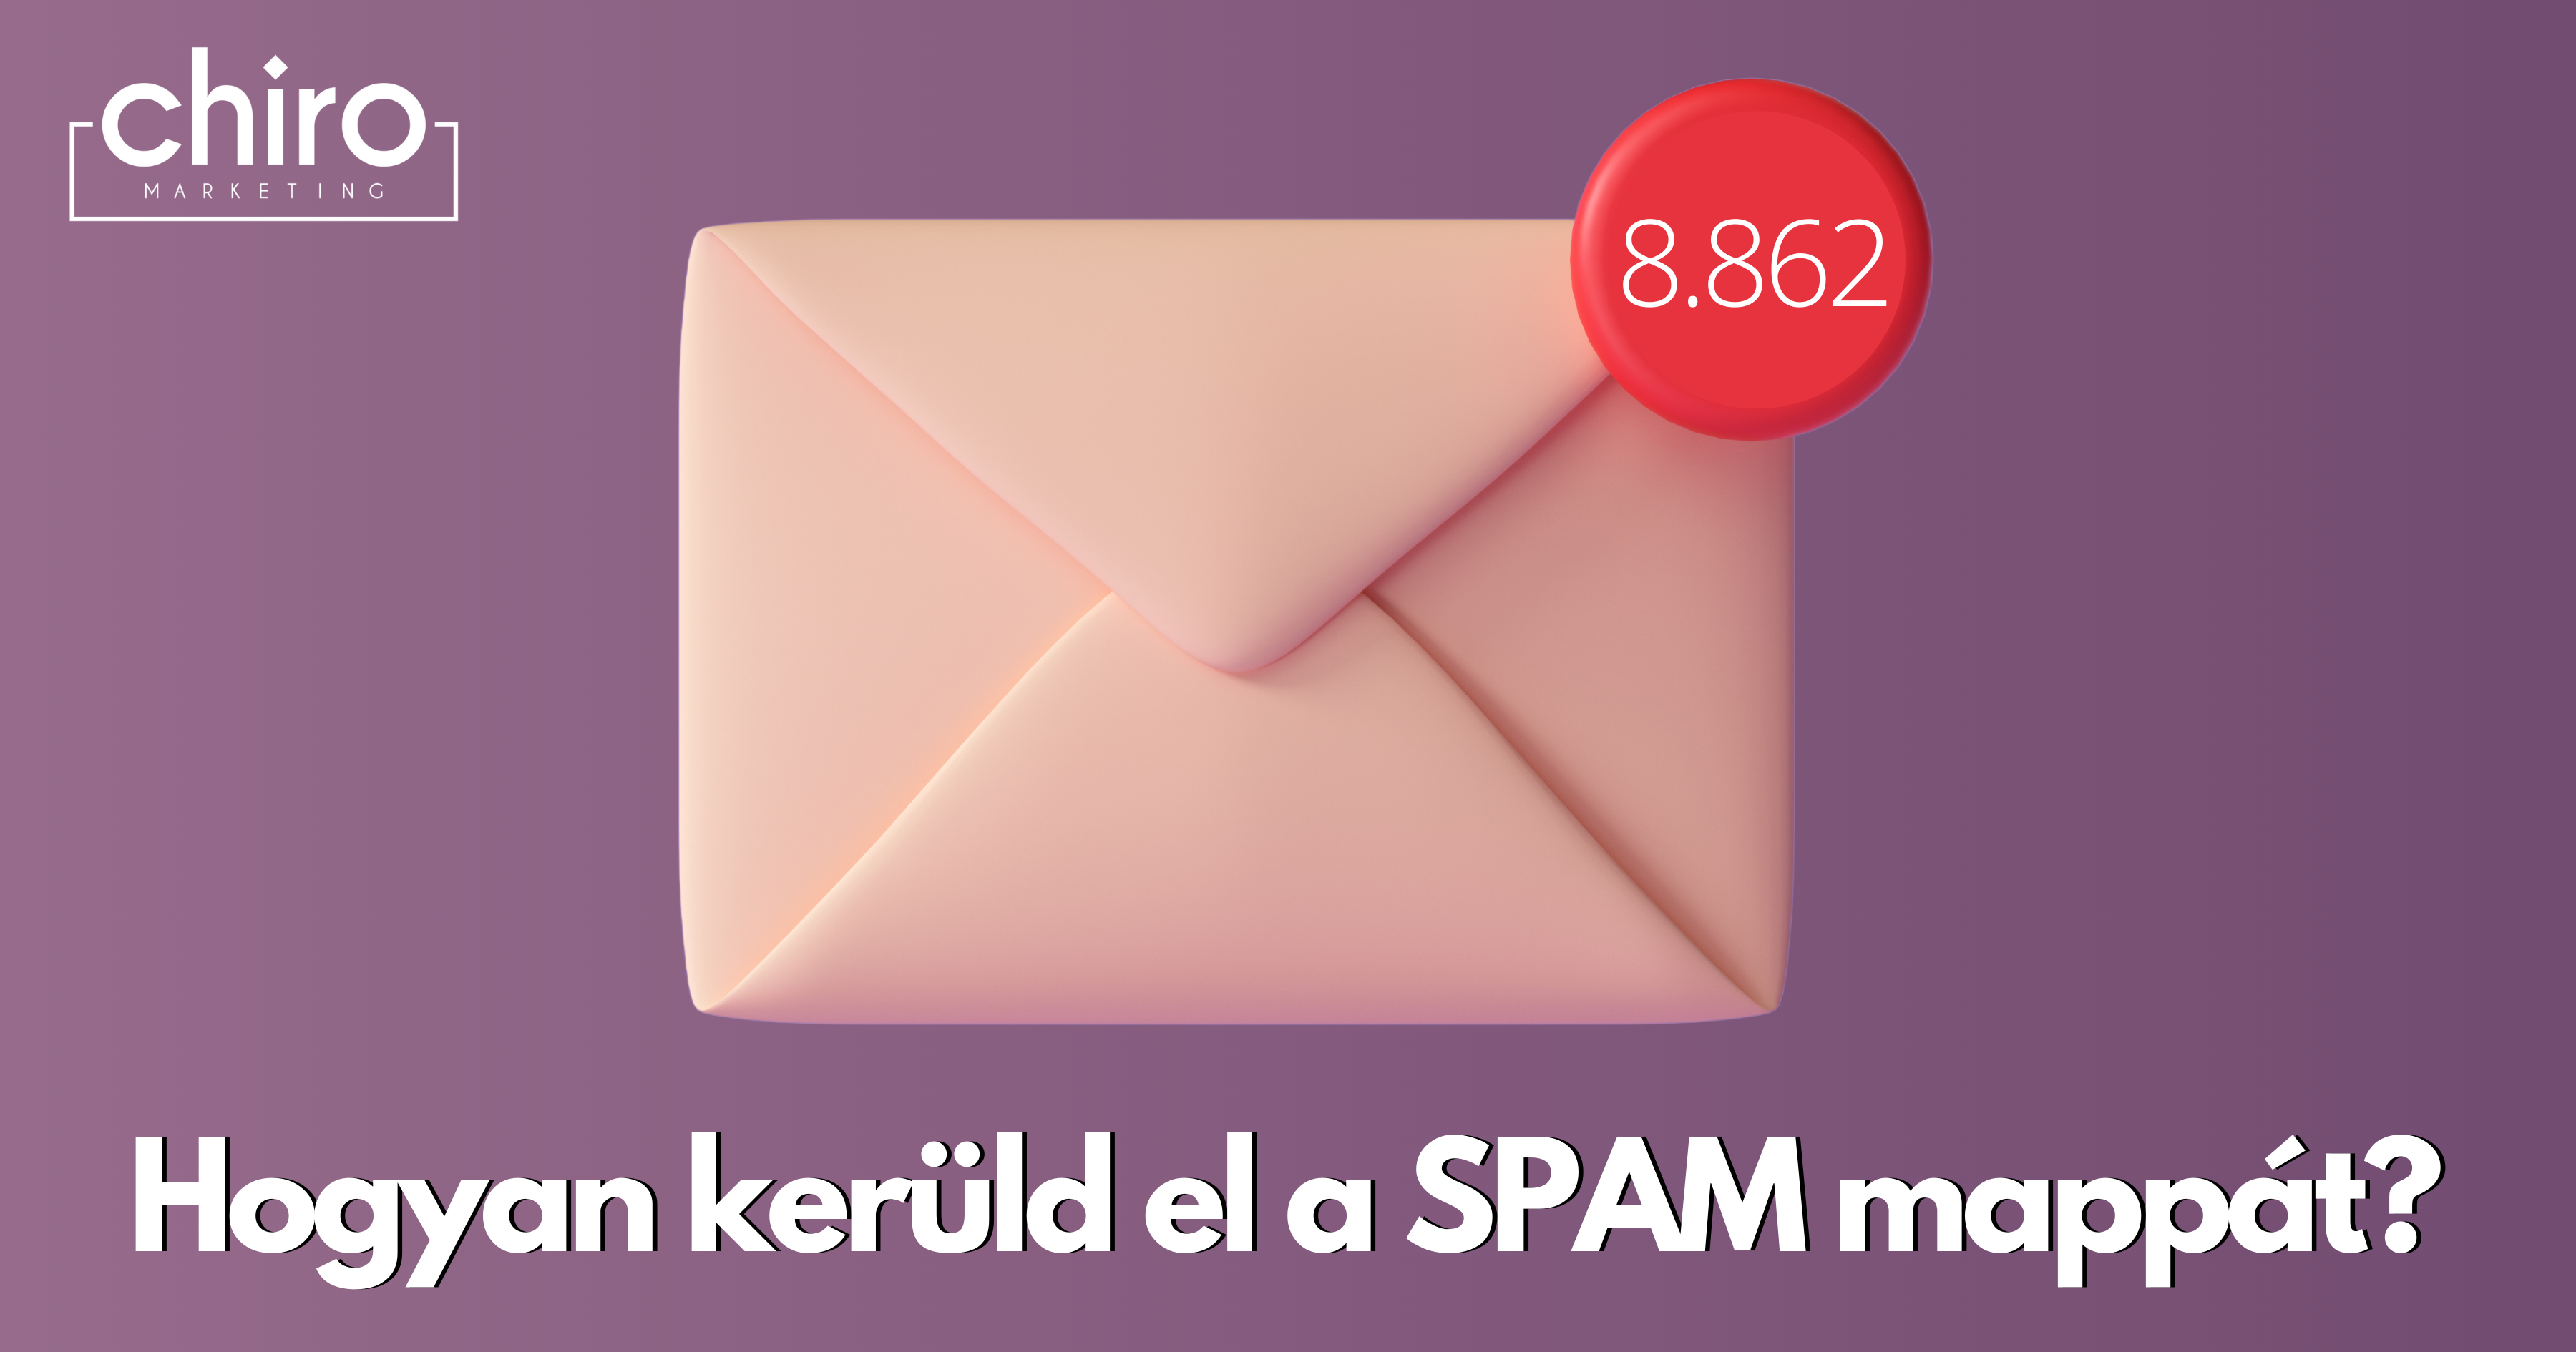 Hogyan kerüld el a spam mappát